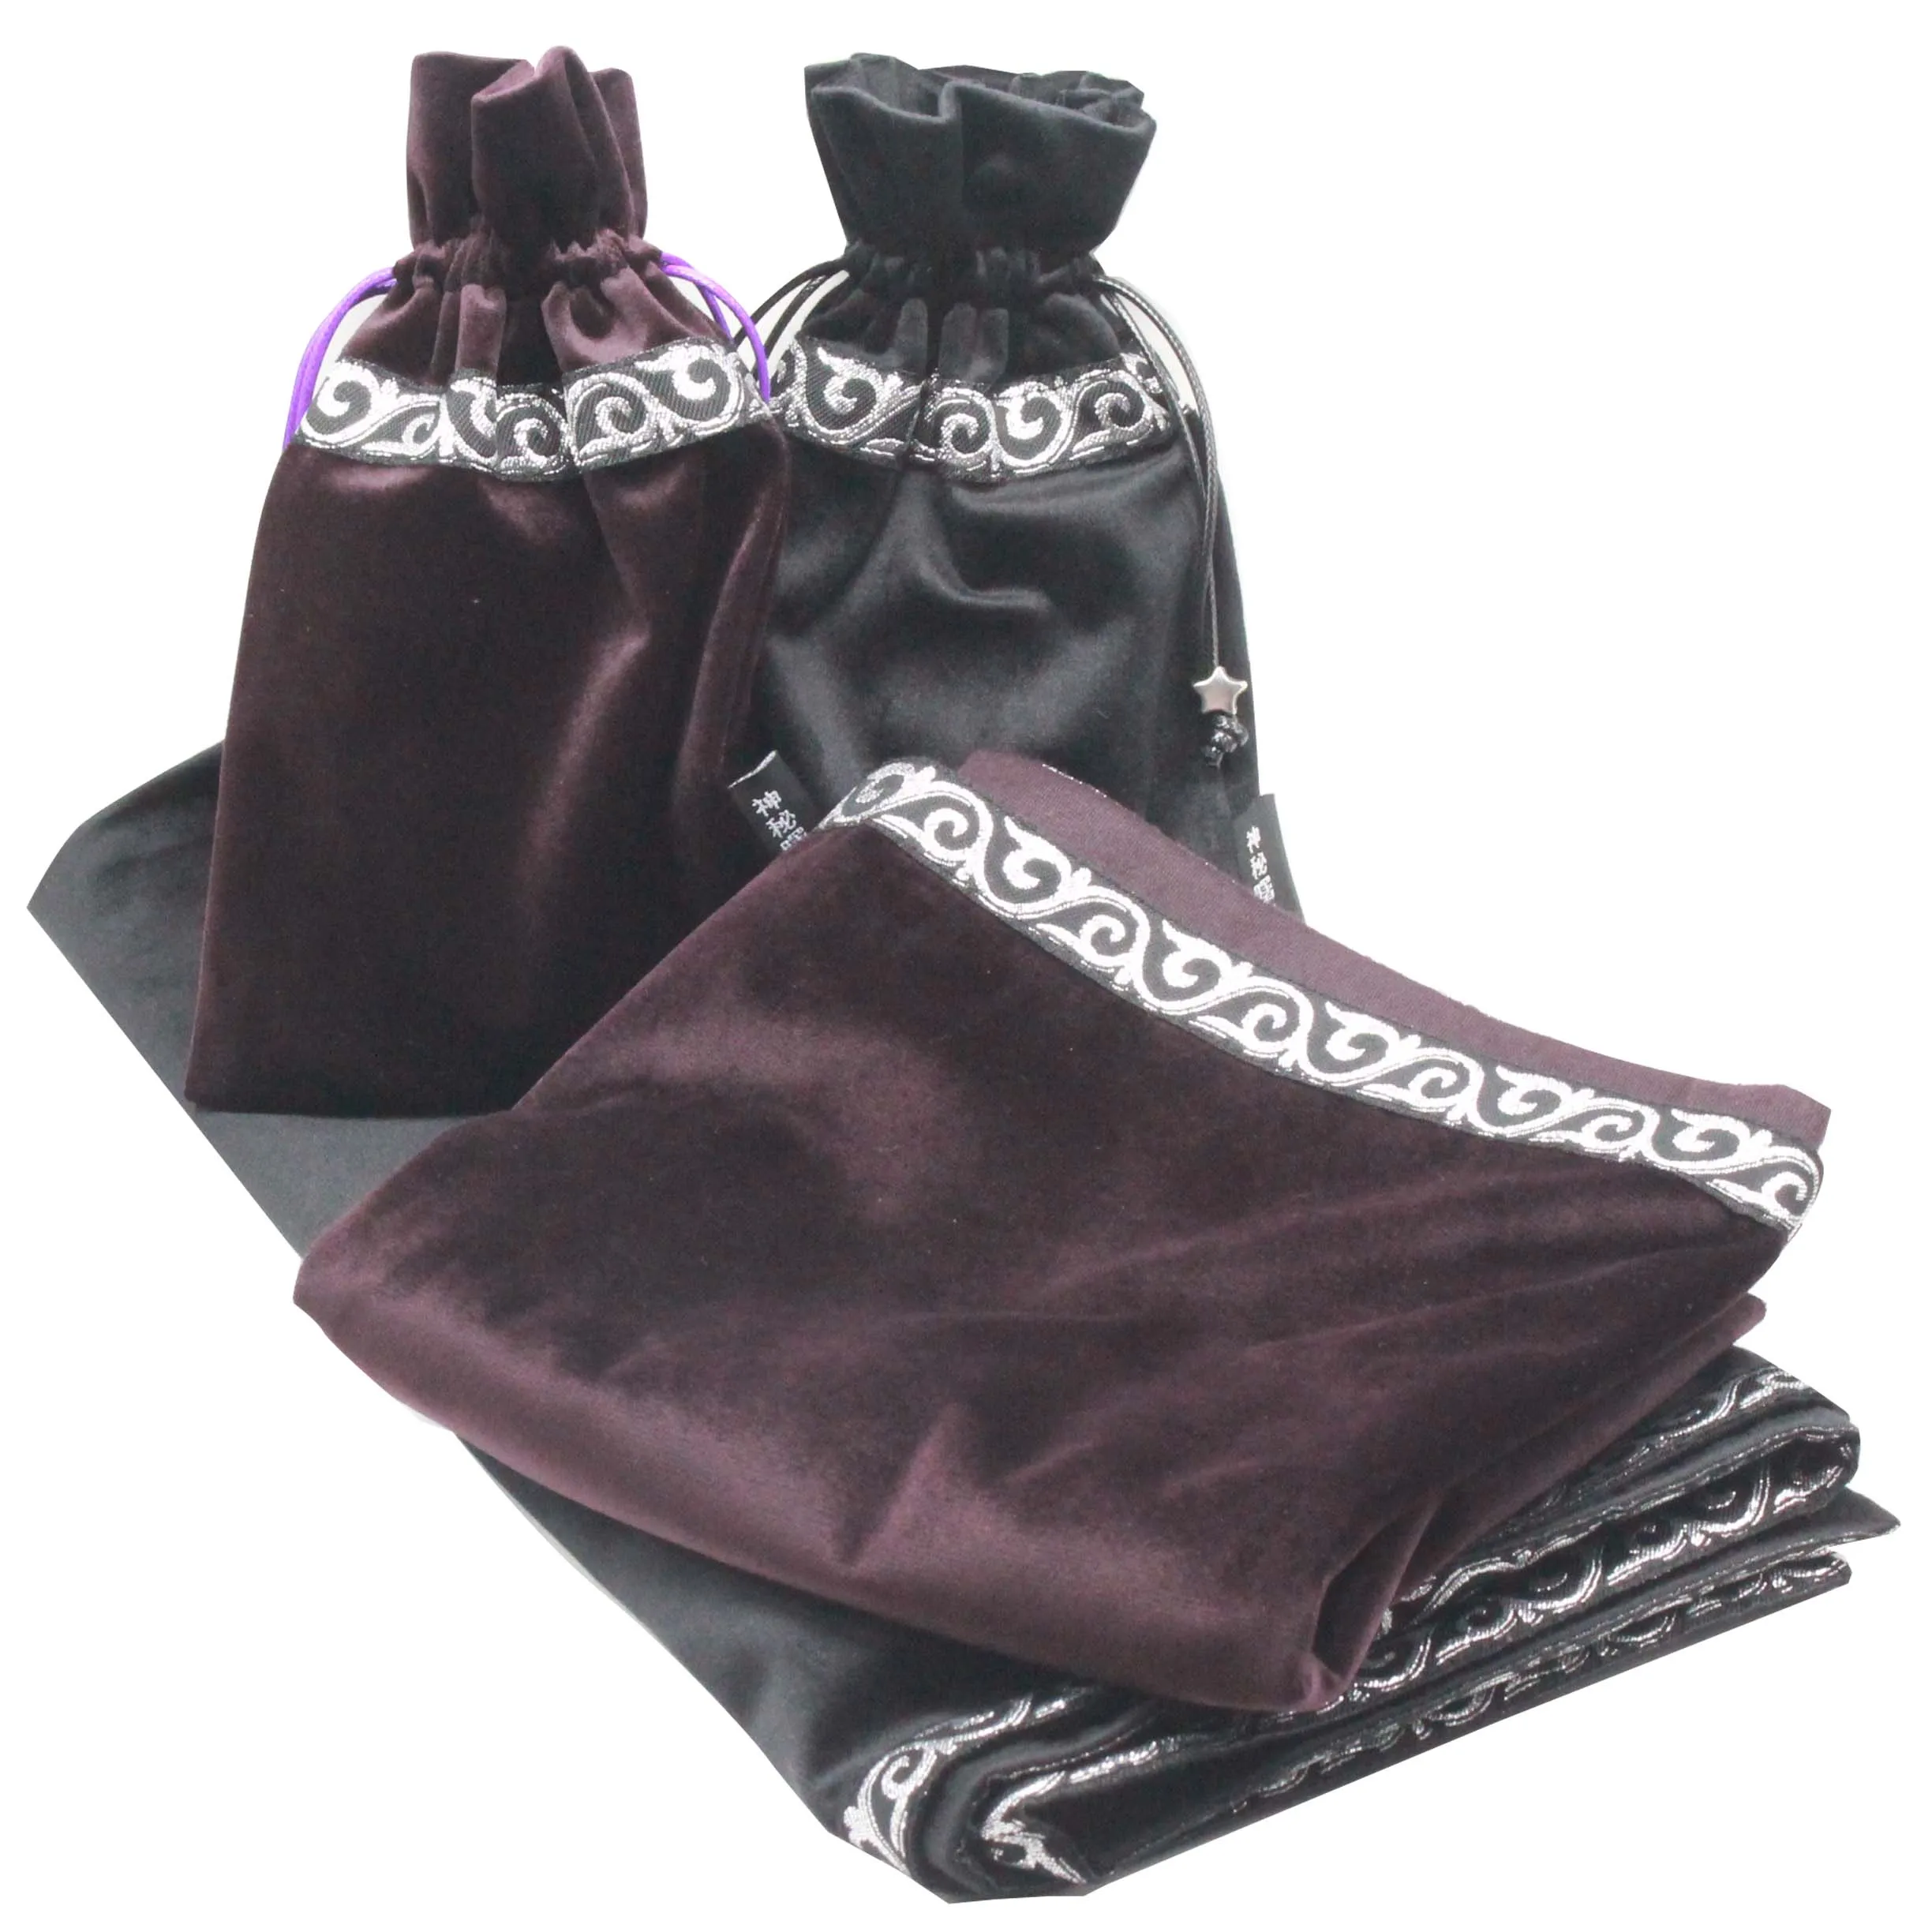 

Скатерть для ТАРО 64x64 см, салфетка с сумкой, одеяло, ковер, флокированная ткань, ткань для настольной игры, церемонии, гадания, астрологии